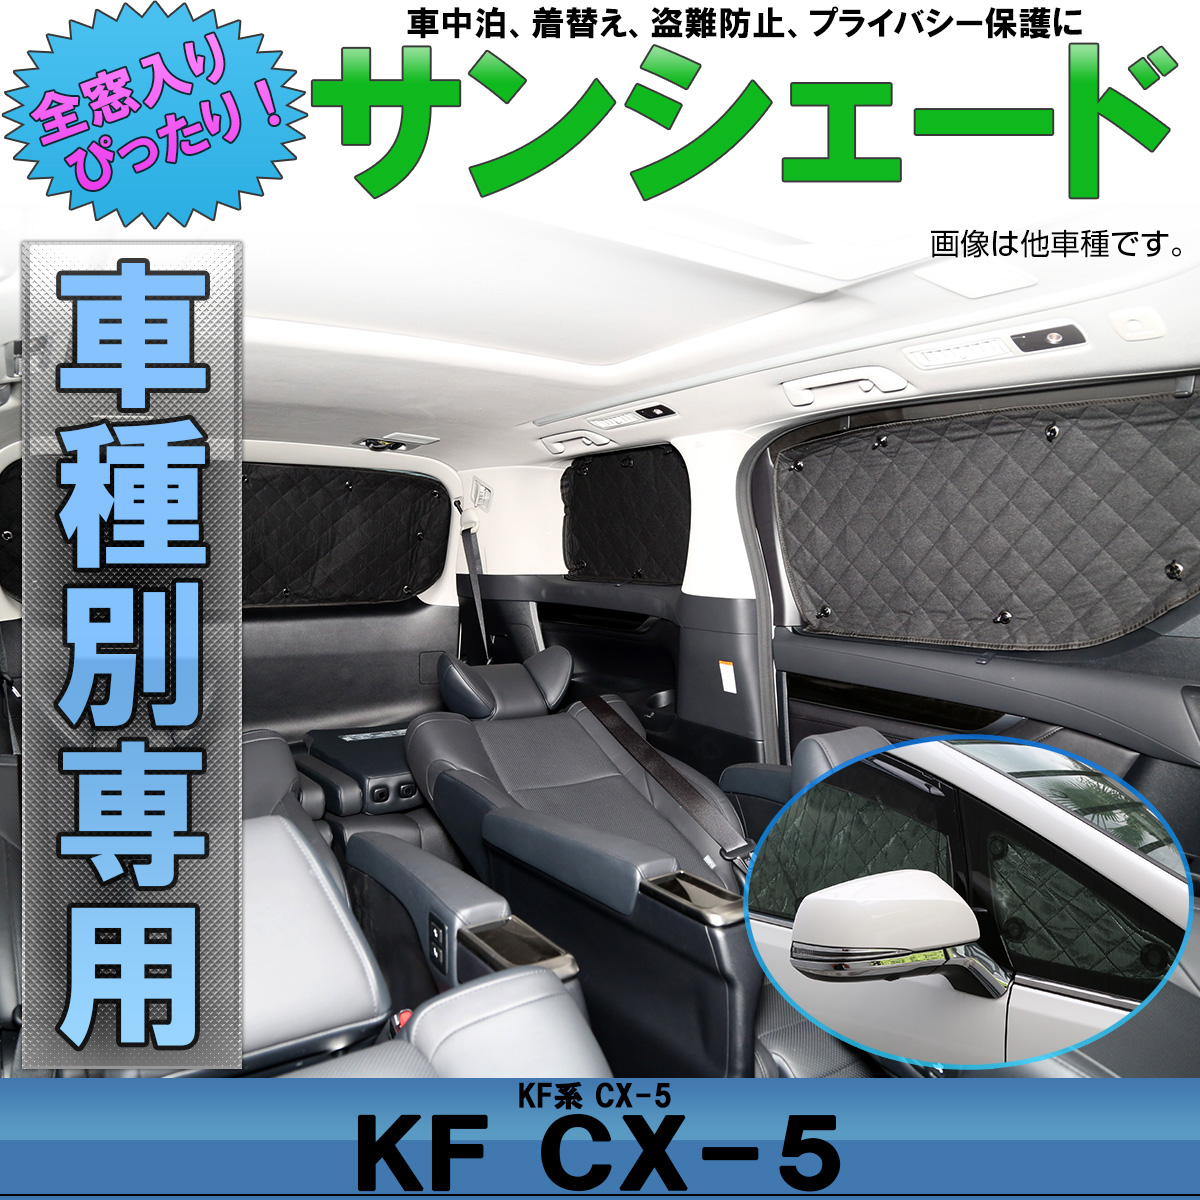 マツダ Kf系 Cx 5 専用設計 サンシェード 全窓用セット 5層構造 ブラックメッシュ 車中泊 プライバシー保護 S 804